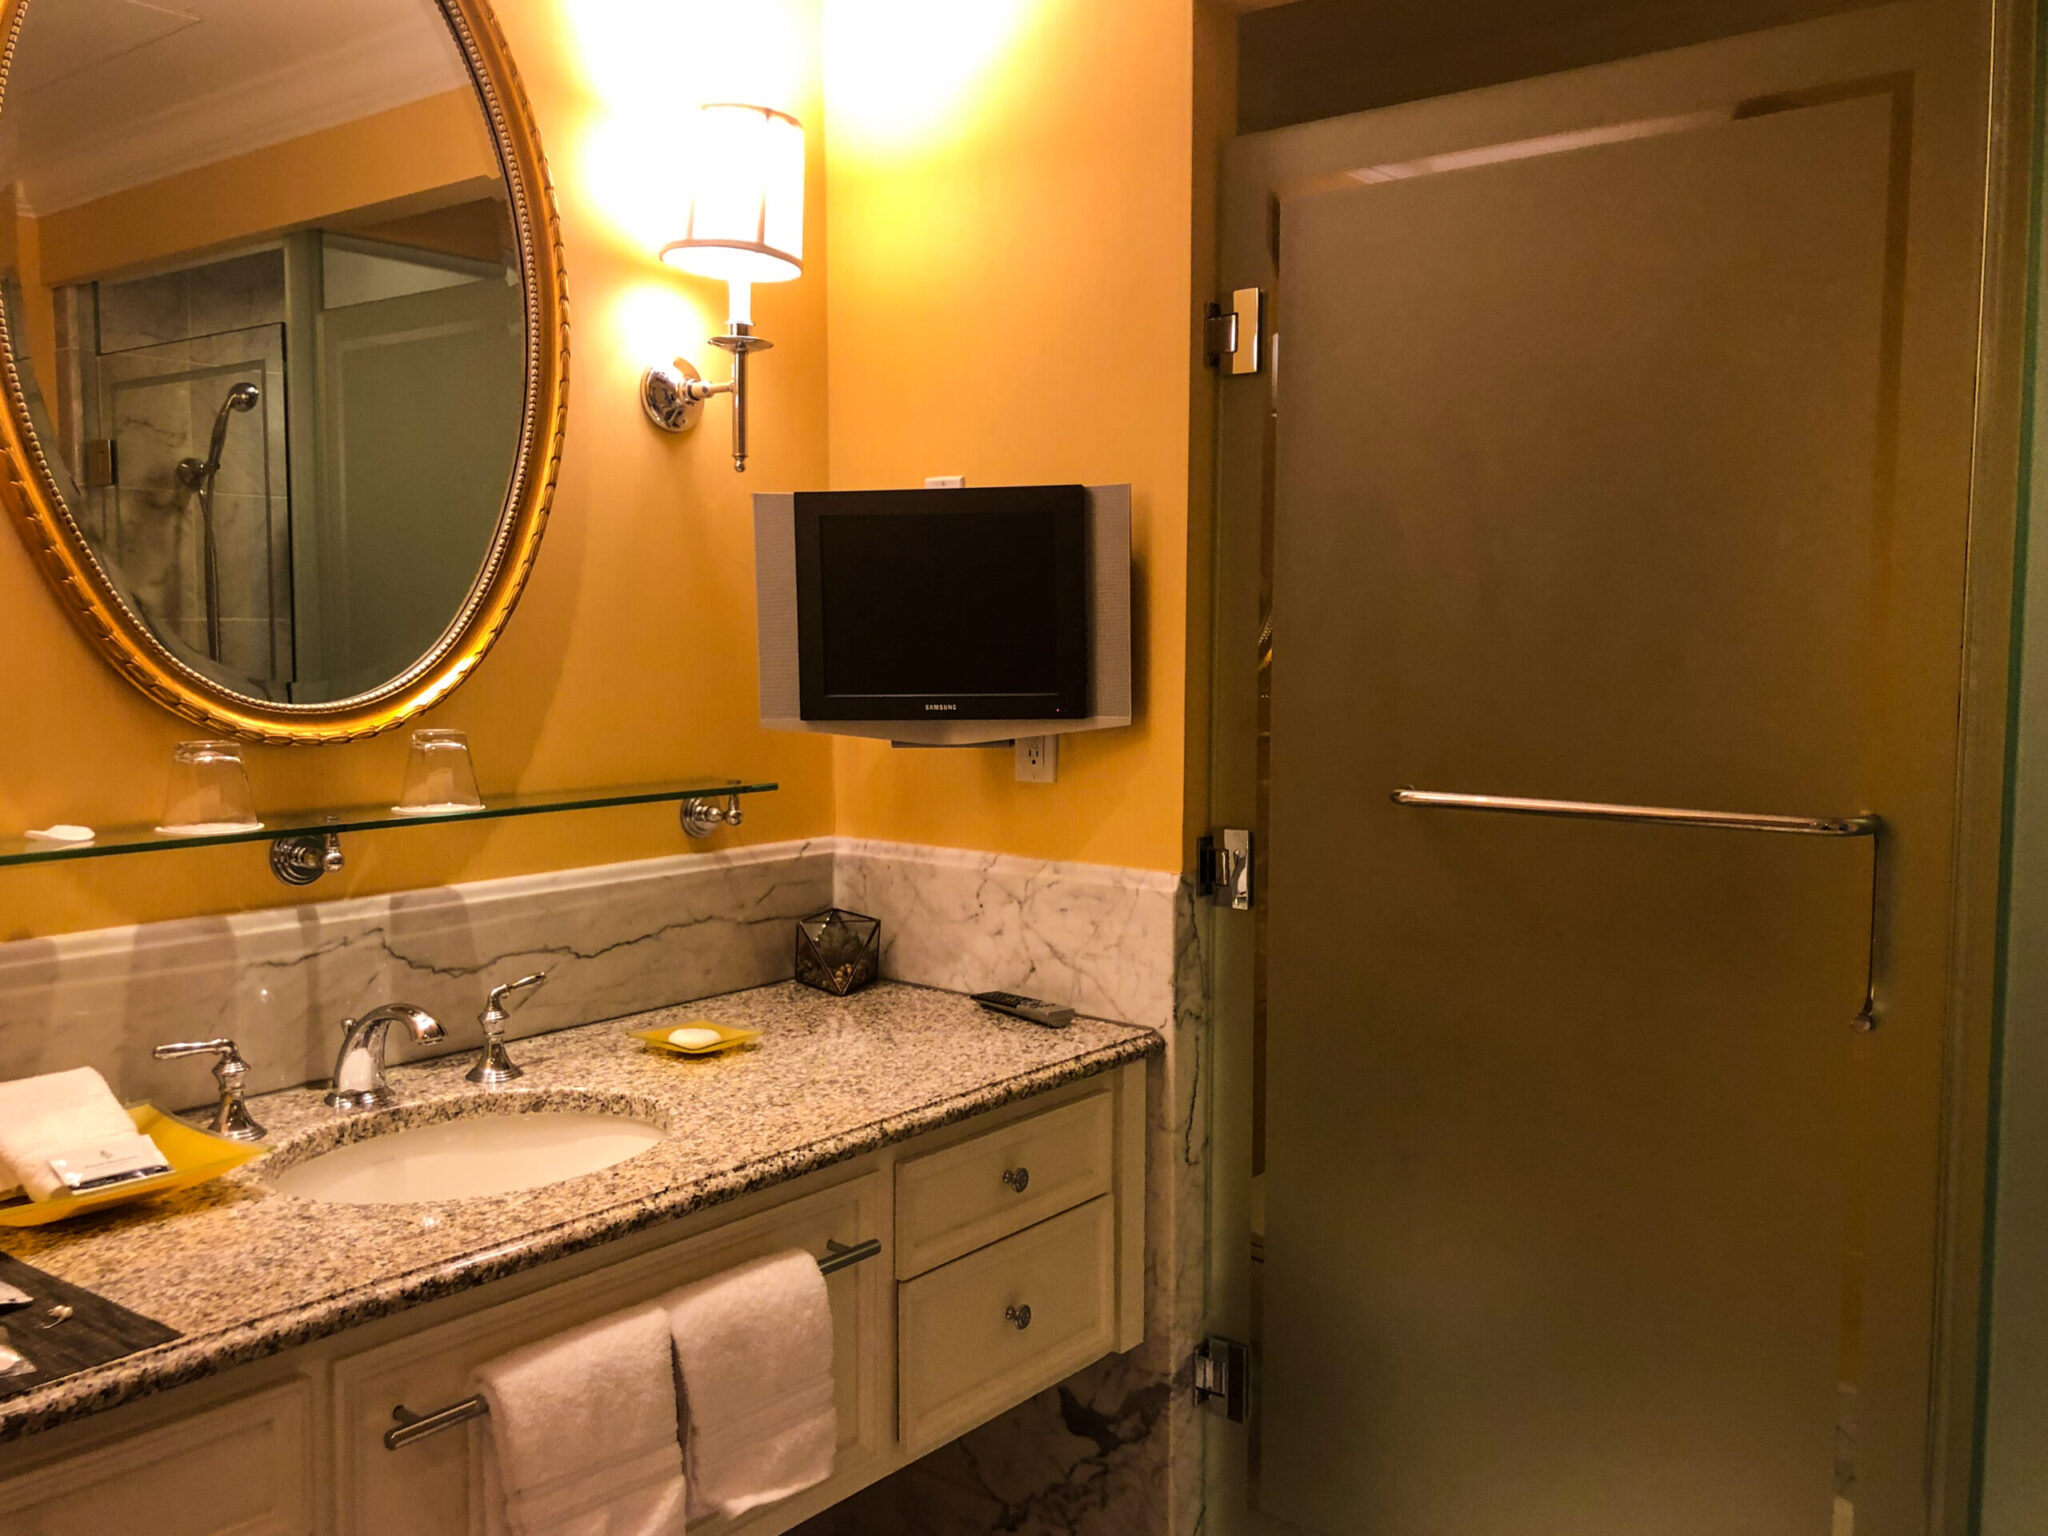 Four Seasons Hotel Westlake Village deluxe king room vanity and separate toilet